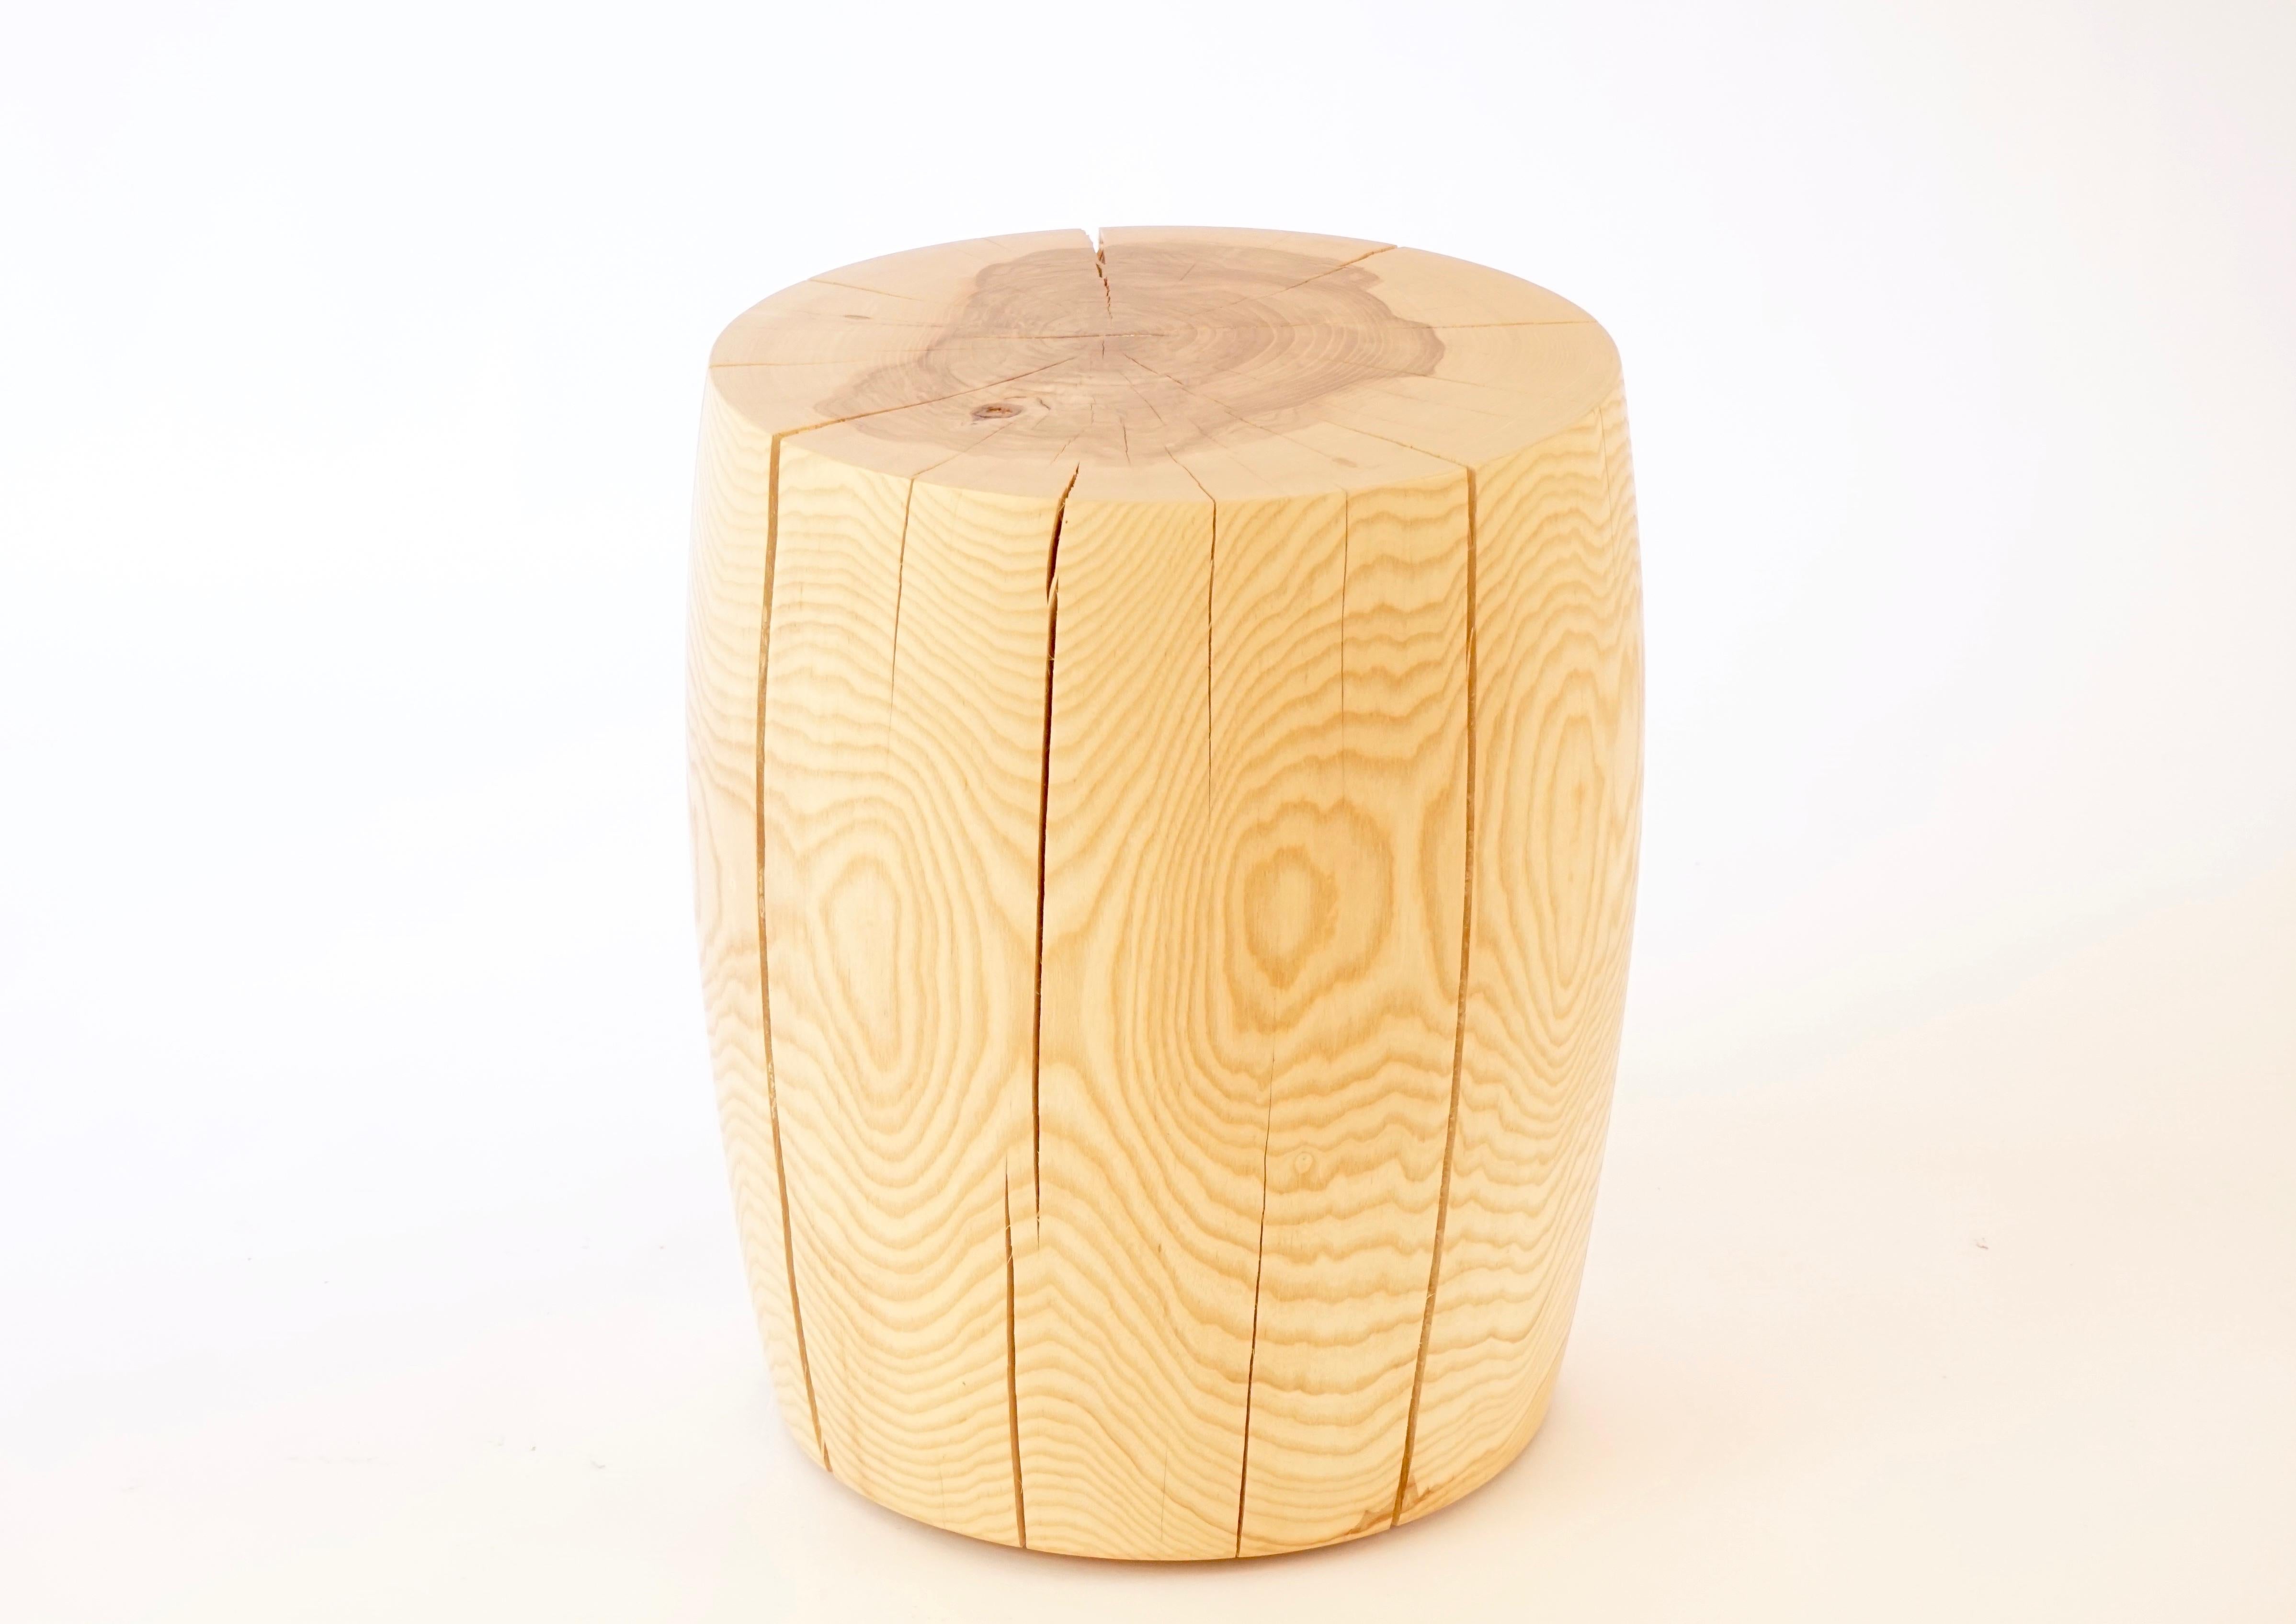 Ce guéridon #9 en frêne est l'une des dix formes originales de la collection de guéridons Lehrecke de 1996. Ce qui rend cette pièce spéciale, c'est la qualité du bois et le fait que le frêne disparaît à un rythme alarmant. M. Lehrecke collecte dès à